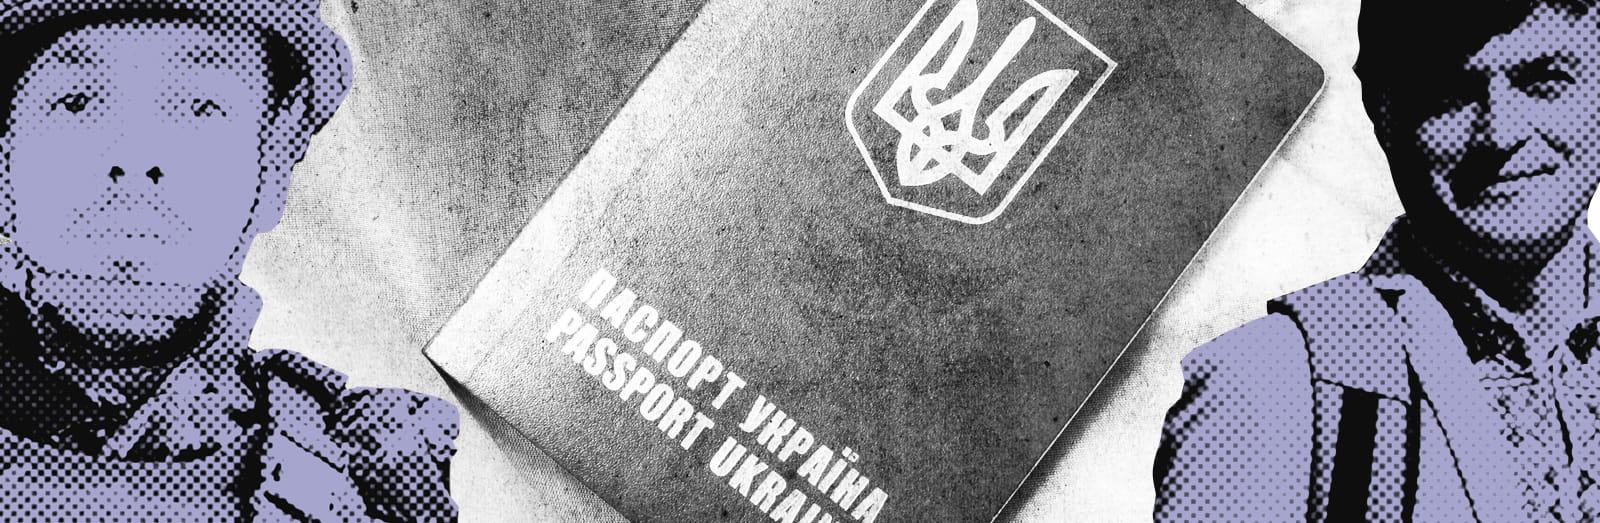 Я віддав за Україну п'ять літрів крові. Історії боротьби за паспорт із тризубом